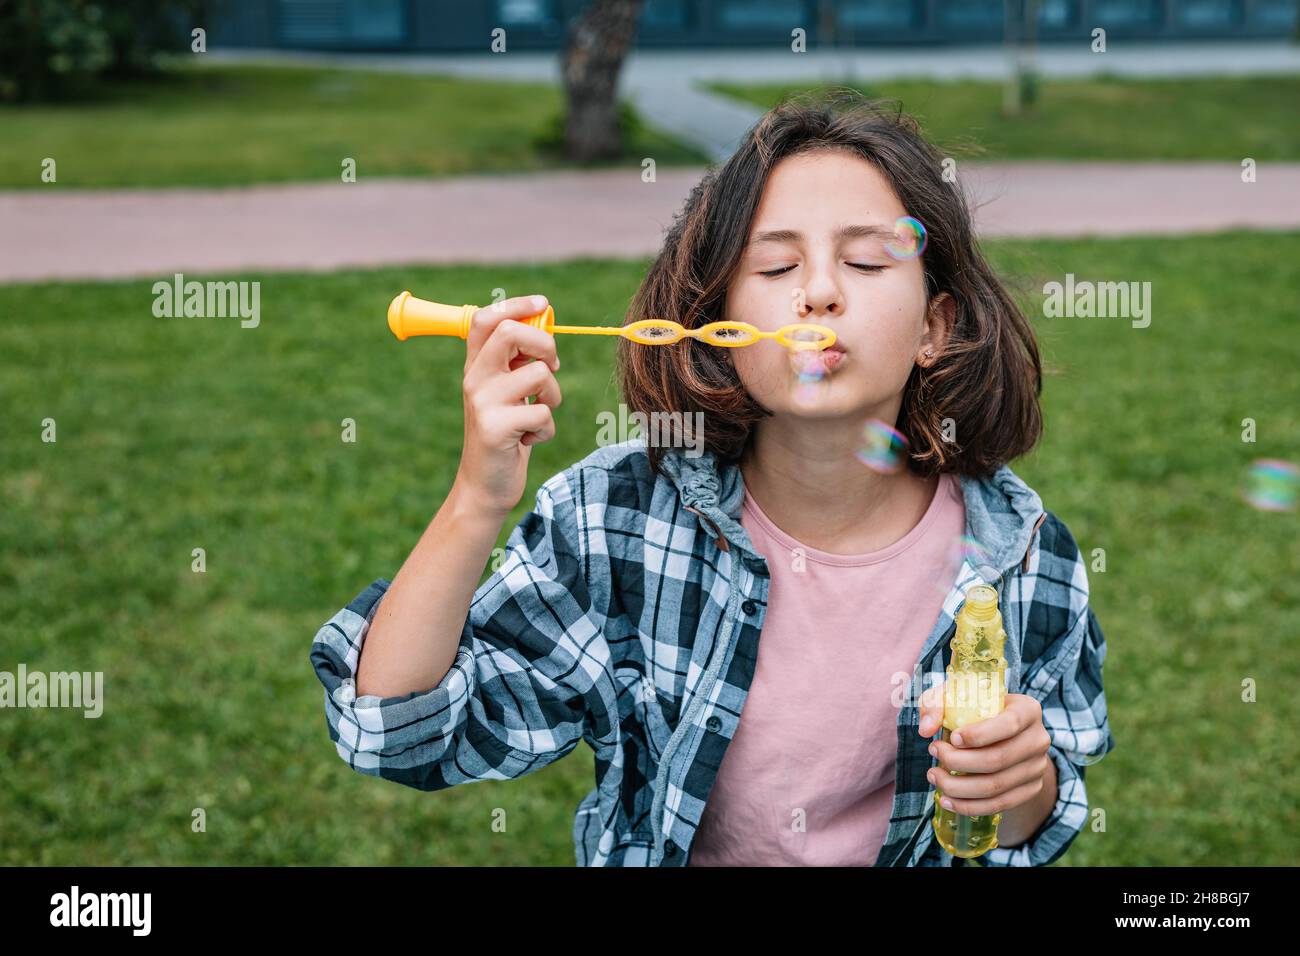 Une jeune fille d'origine caucasienne attirante fait des bulles de savon.Portrait d'une jolie fille brune s'amusant dans un parc d'été.Emot positif Banque D'Images